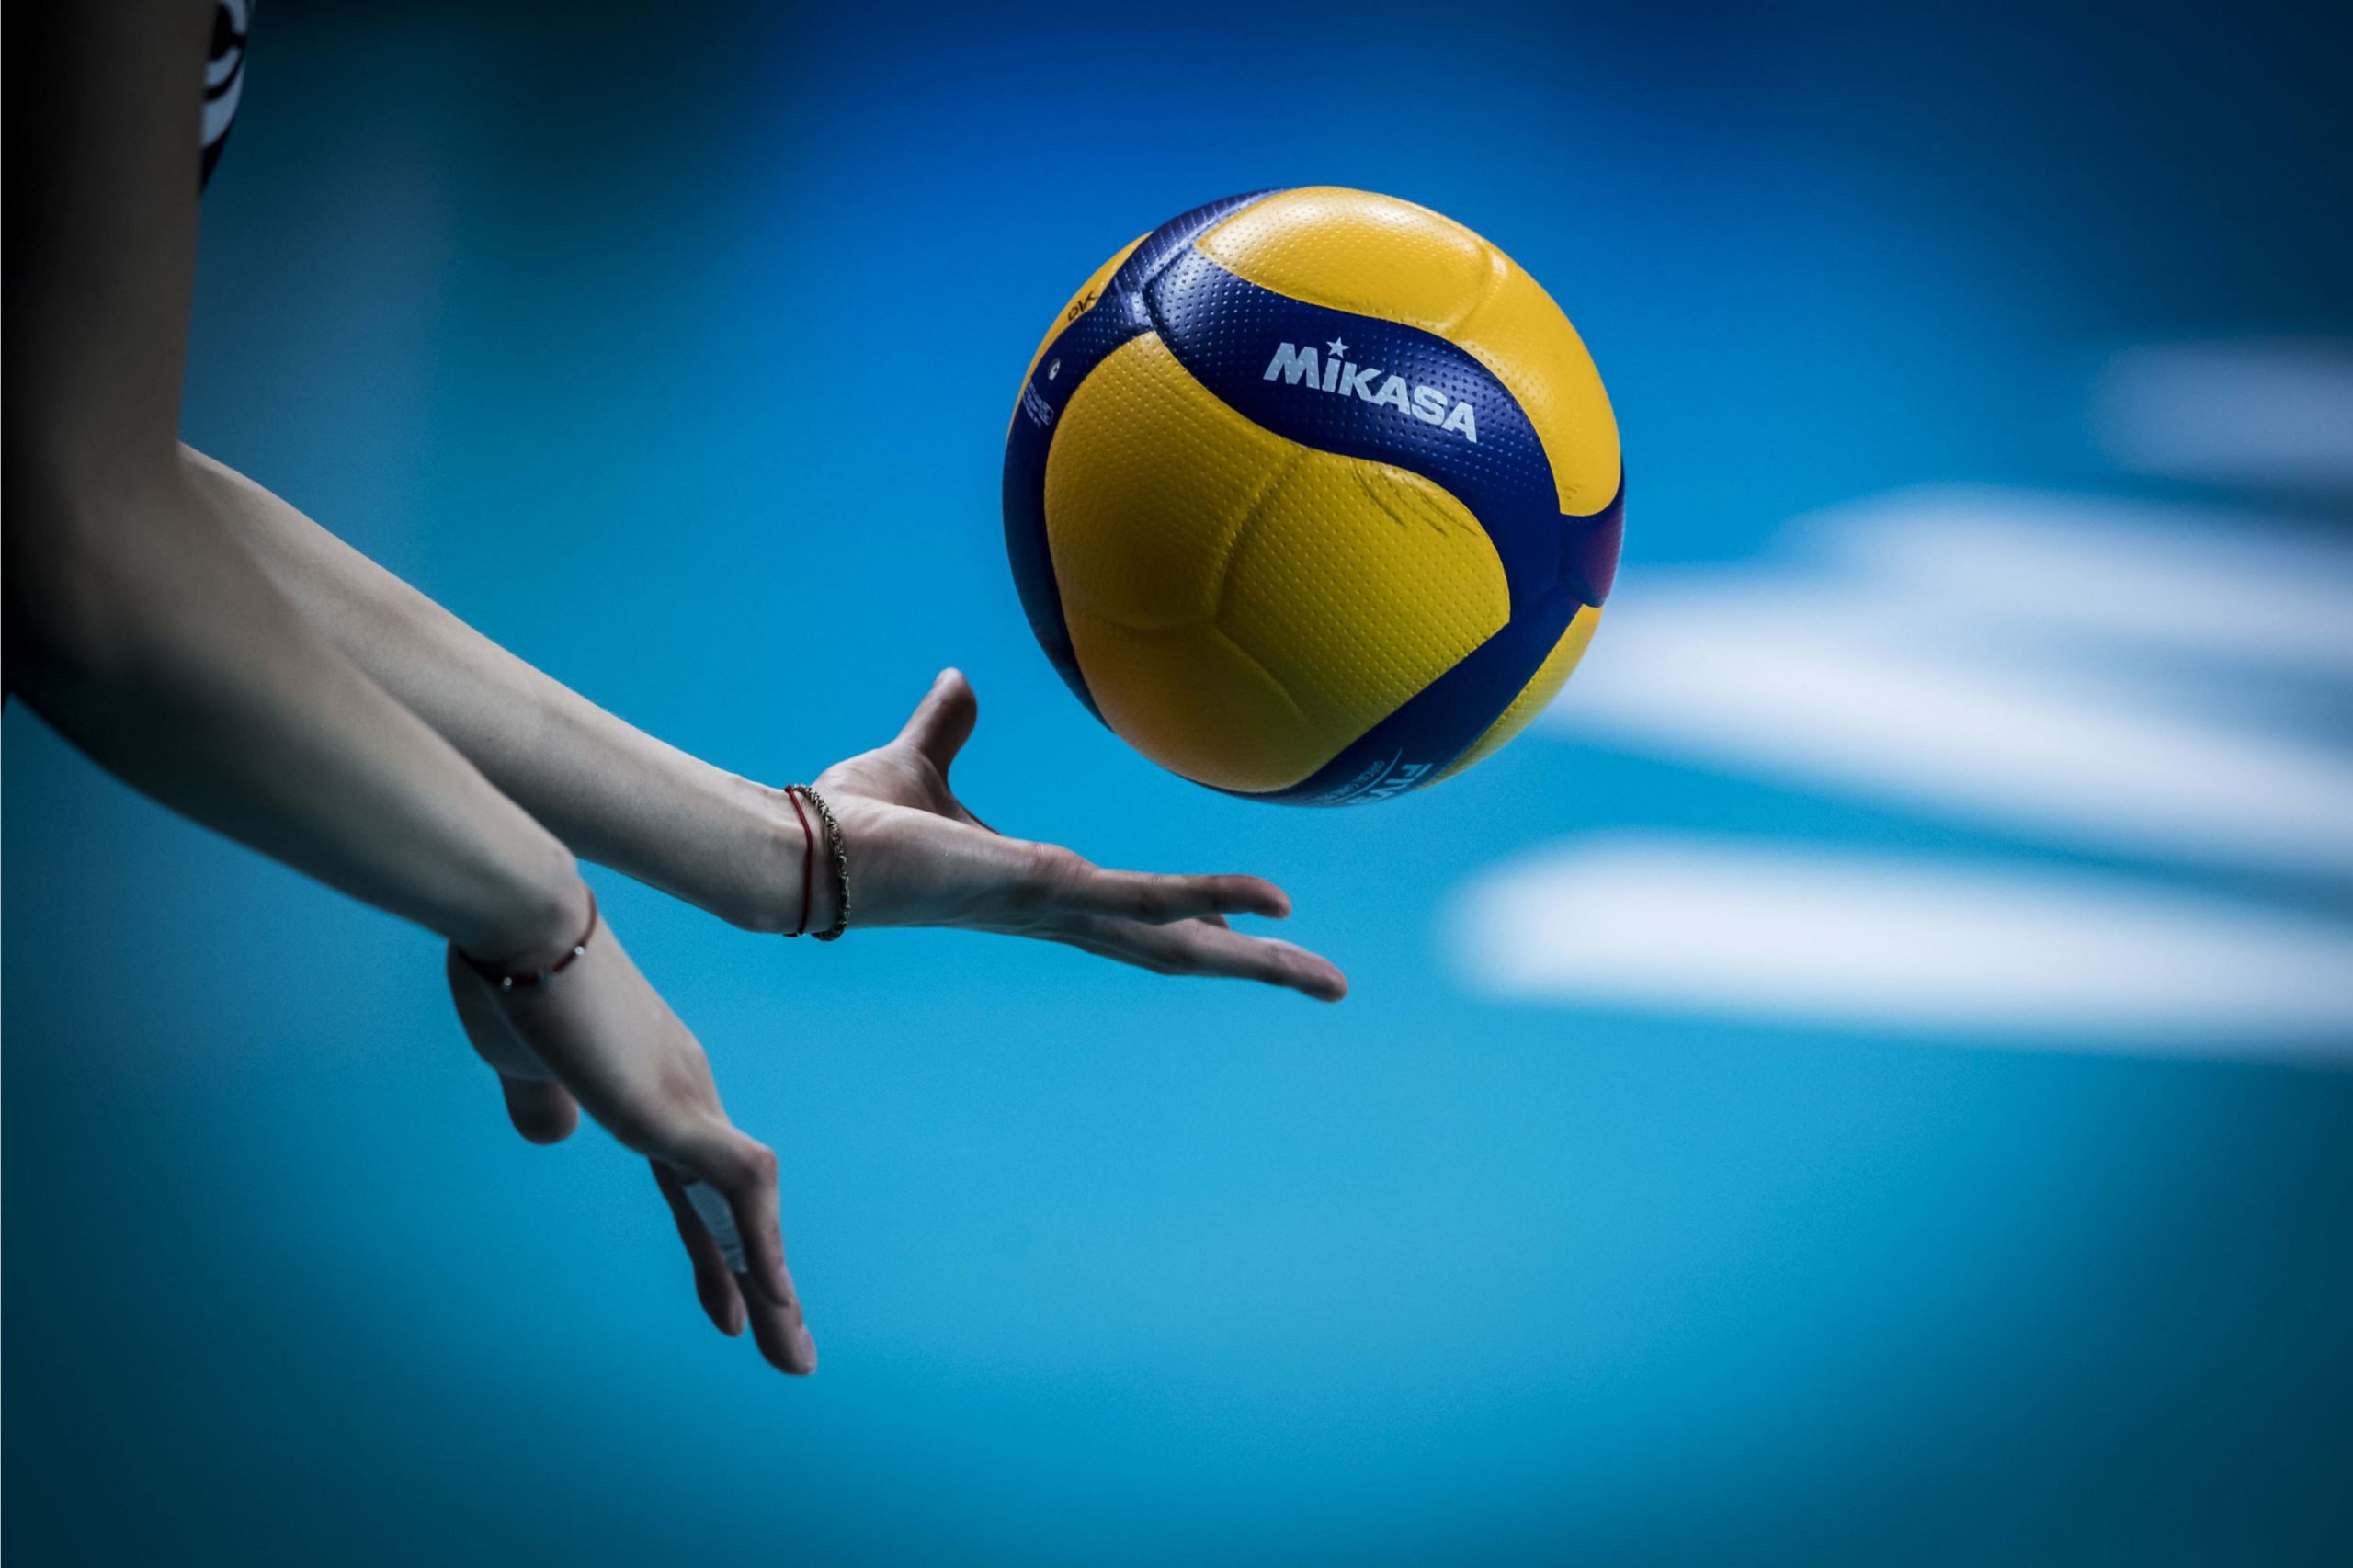 Спортивные каналы волейбол. Волейбол. Фотосессия с волейбольным мячом. Волейбольный мяч в руке. Галовский мяч для волейбола.